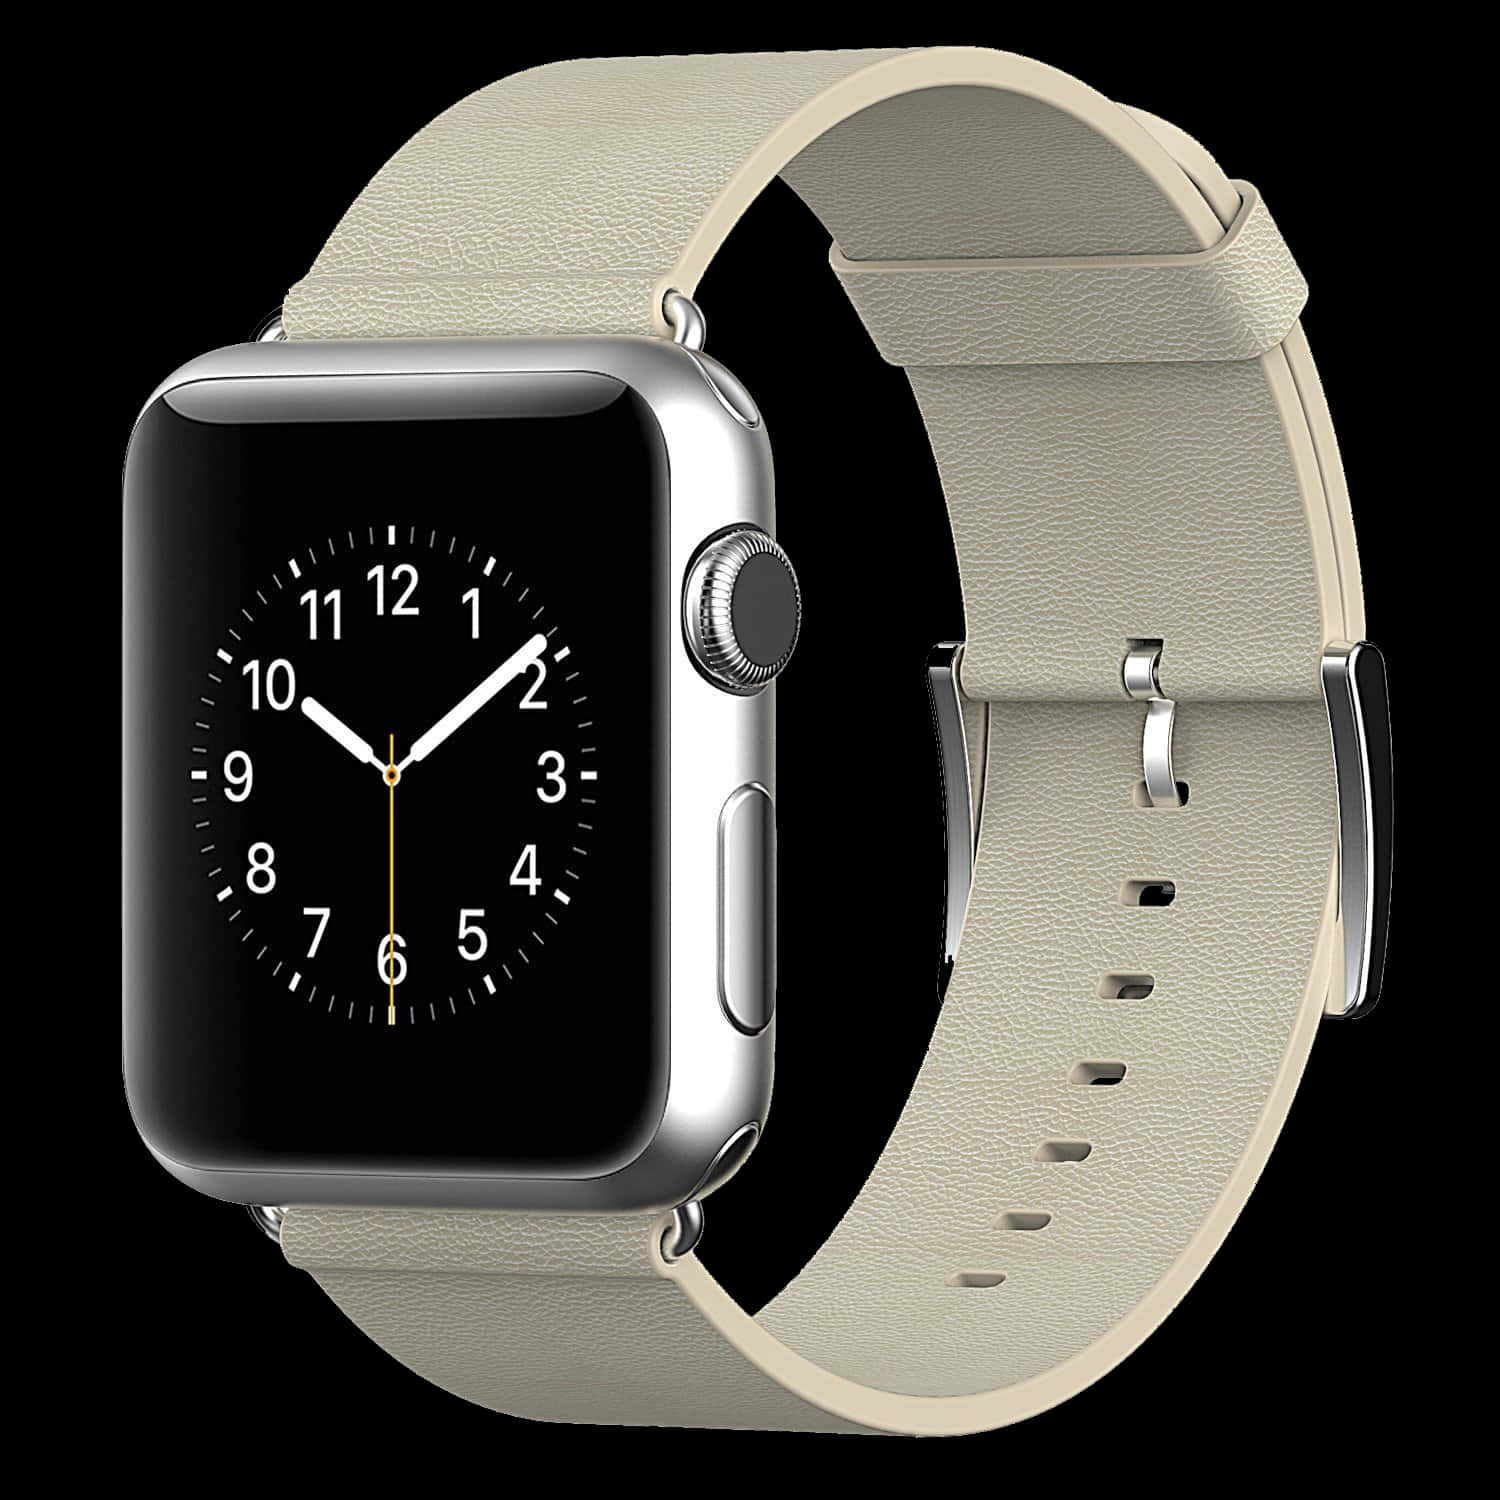 Liggasteget Före Trenden Med Apple Watch, Världens Mest Innovativa Bärbara Enhet.